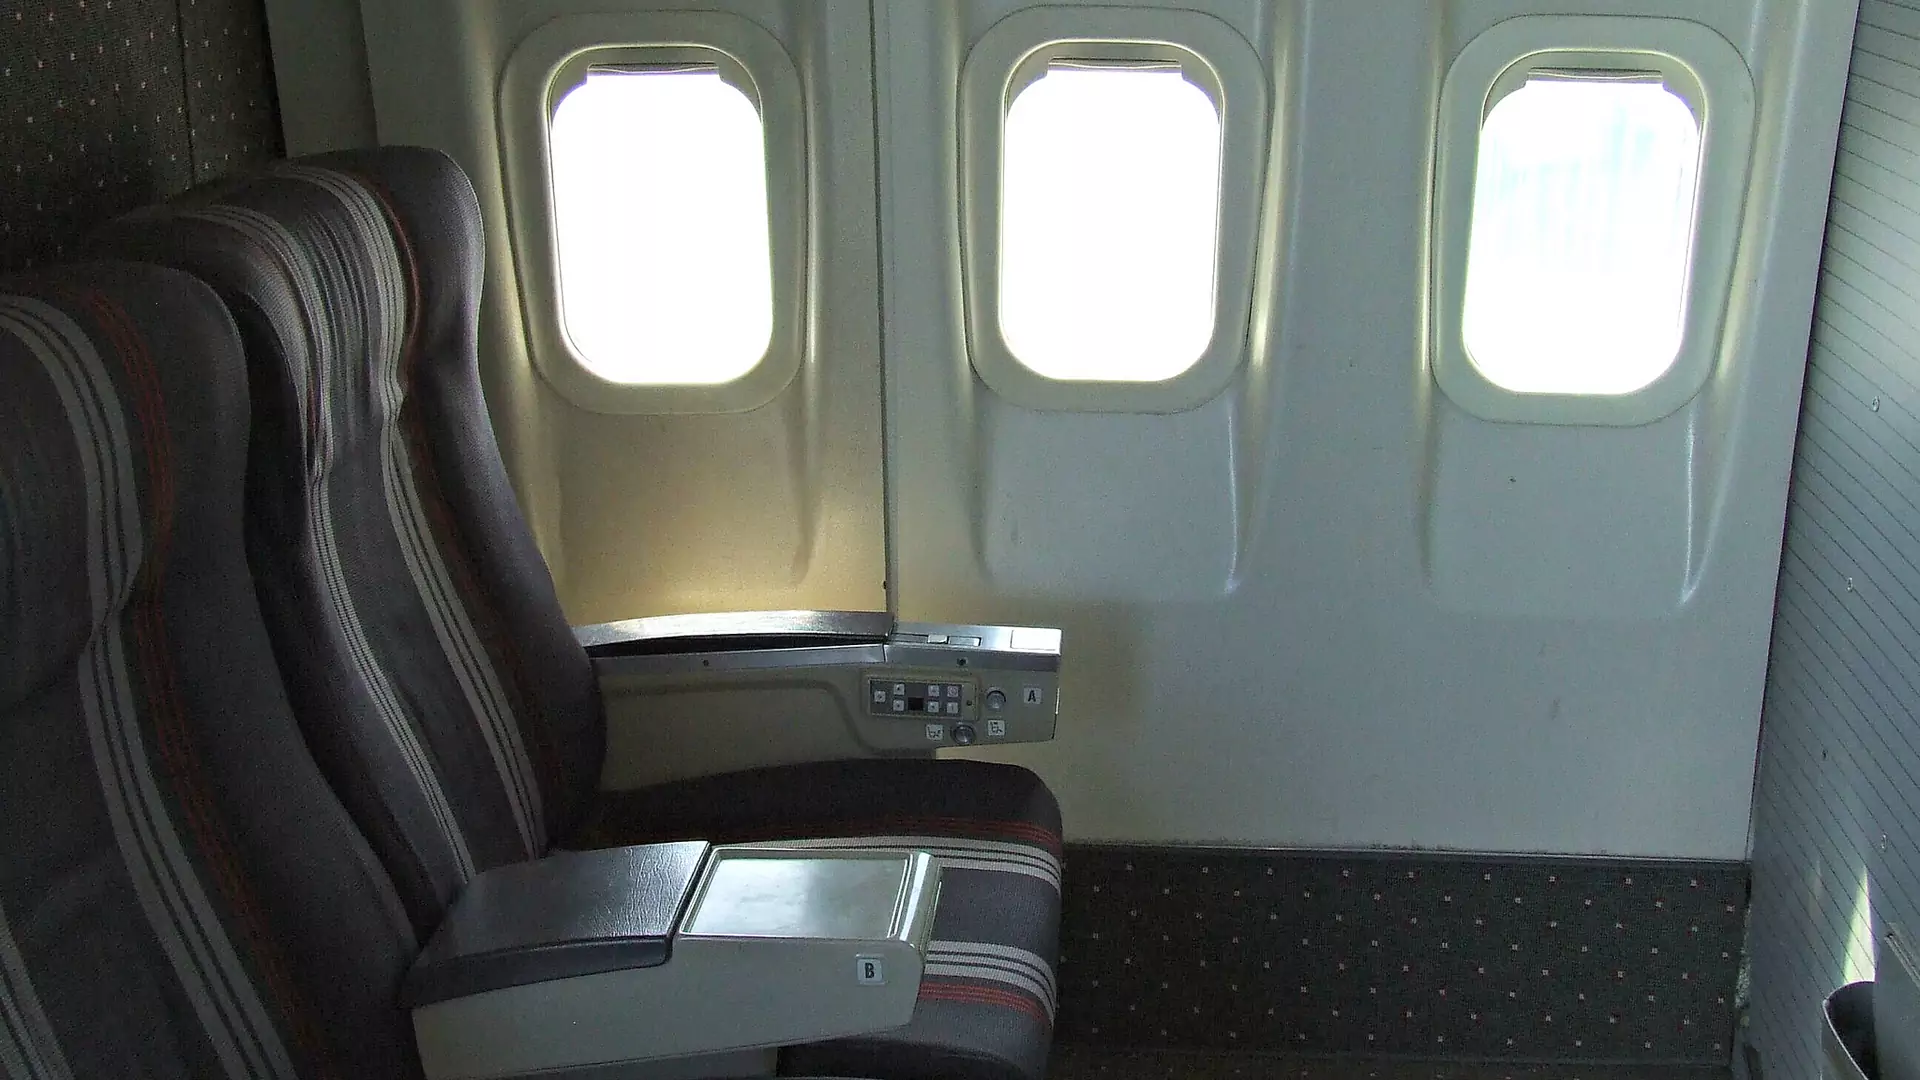 Dlaczego okna w samolotach mają zaokrąglone rogi?